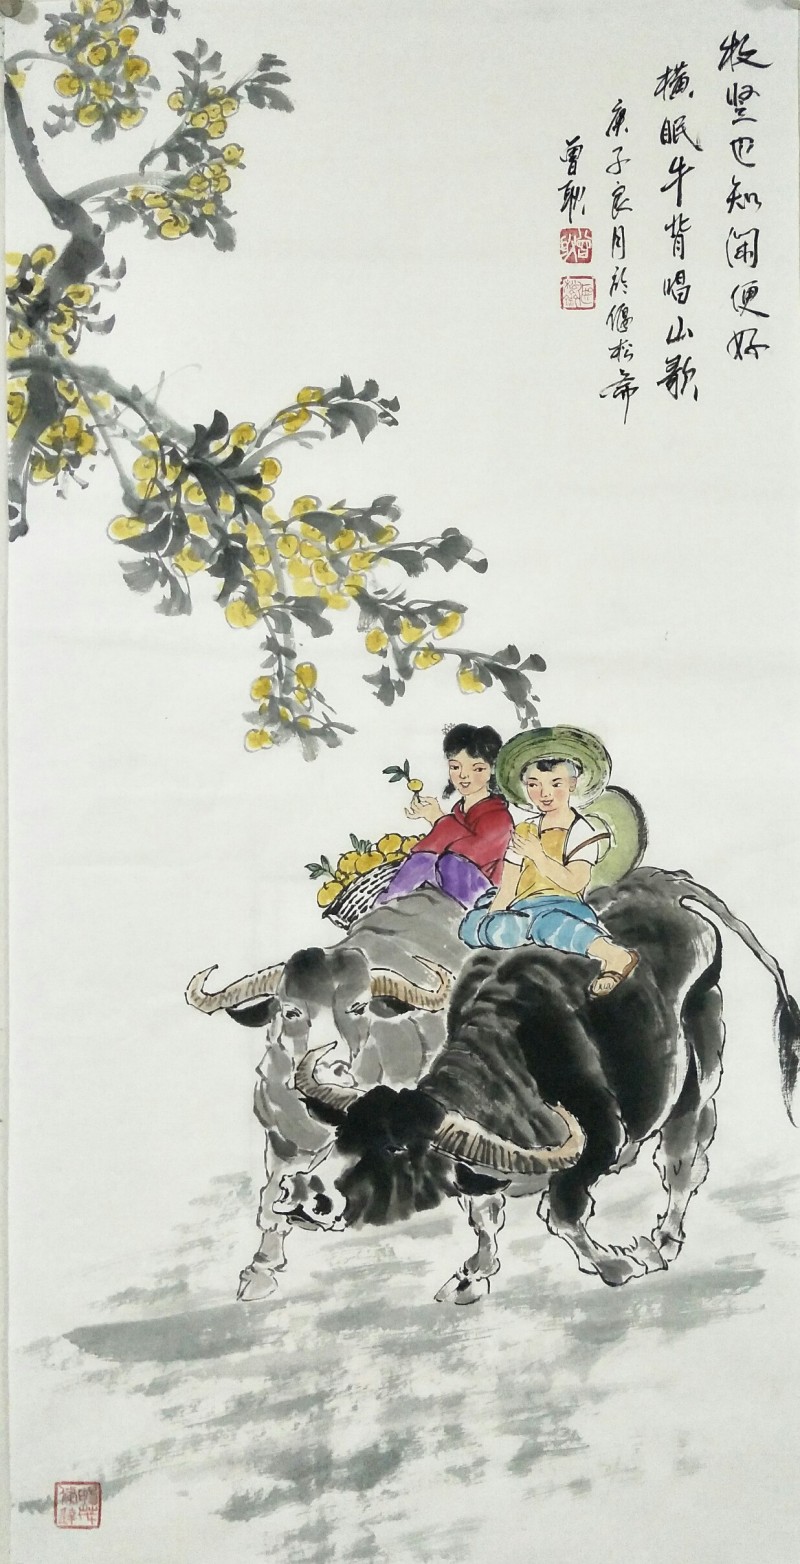 中国楹联学会中宣盛世文化艺术交流中心书画风采展示——曾耿